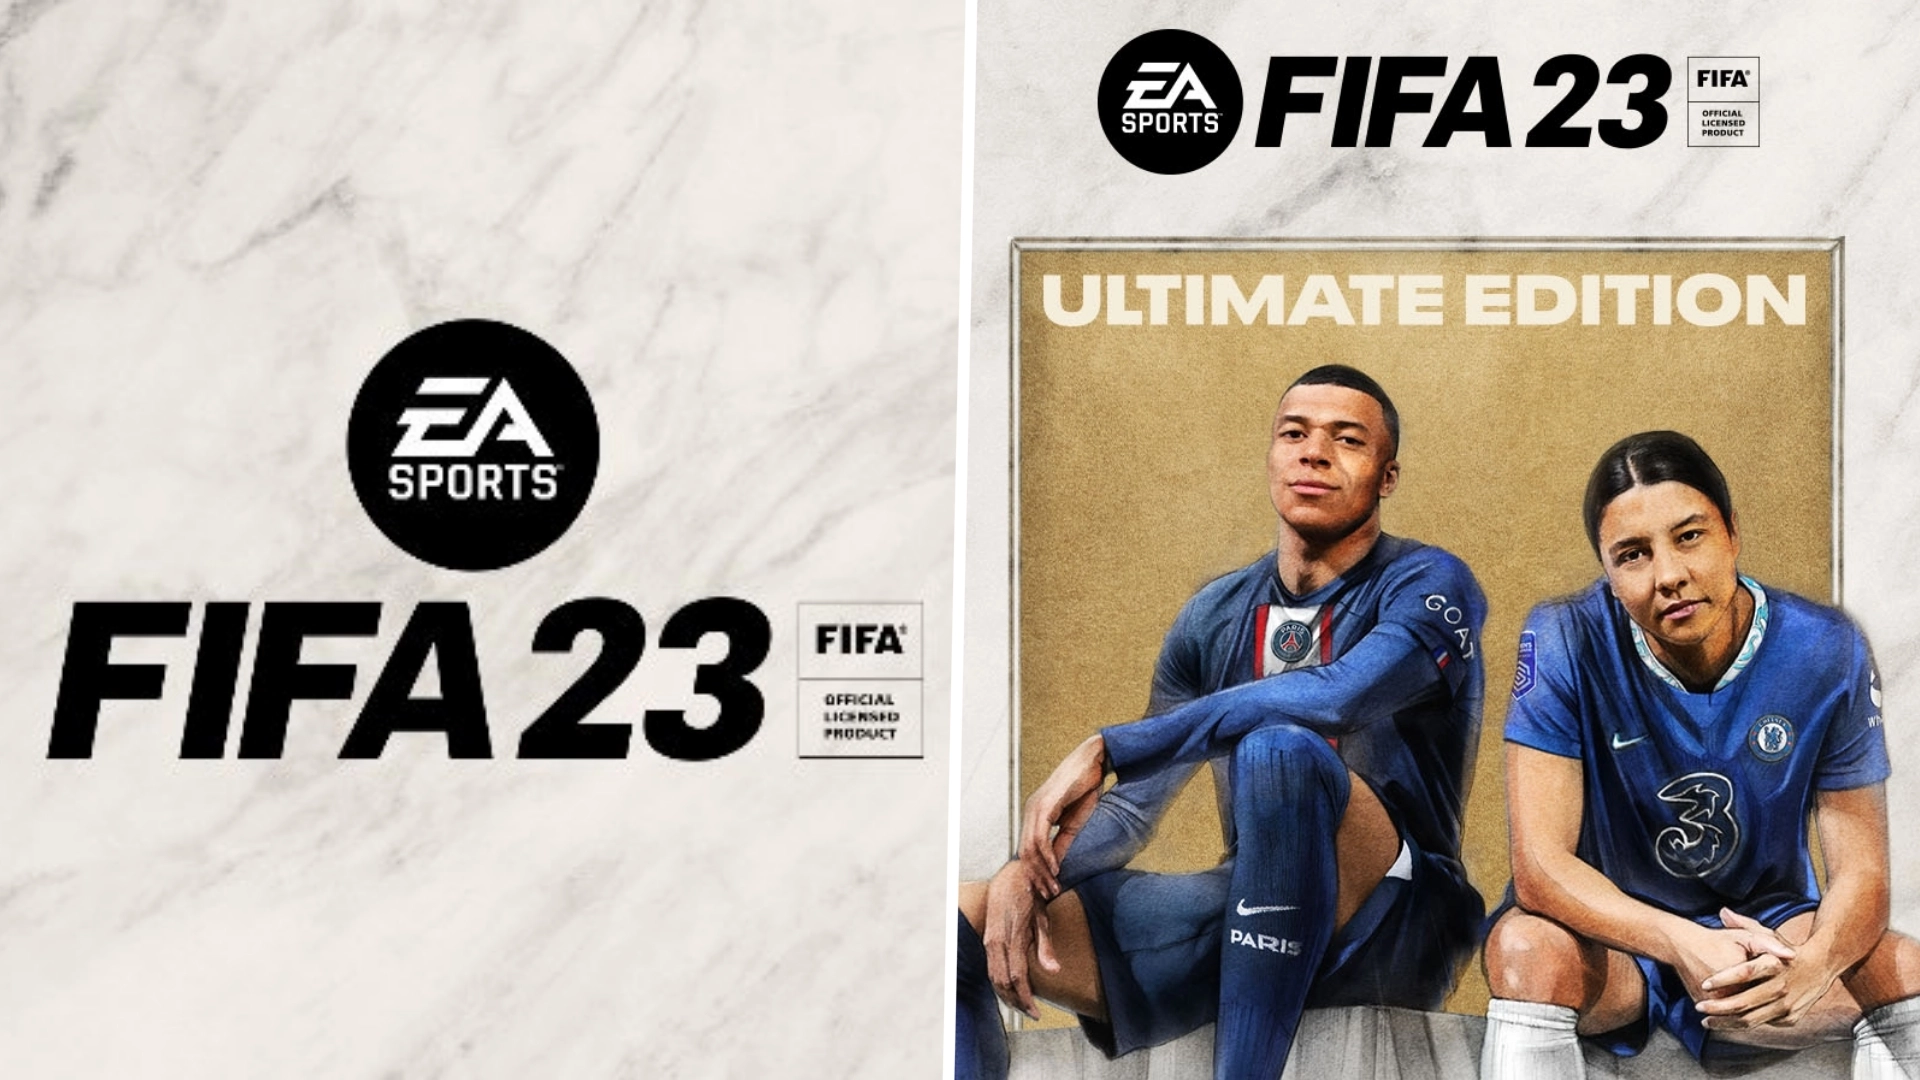 دانلود بازی FIFA 23 – Ultimate Edition برای کامپیوتر